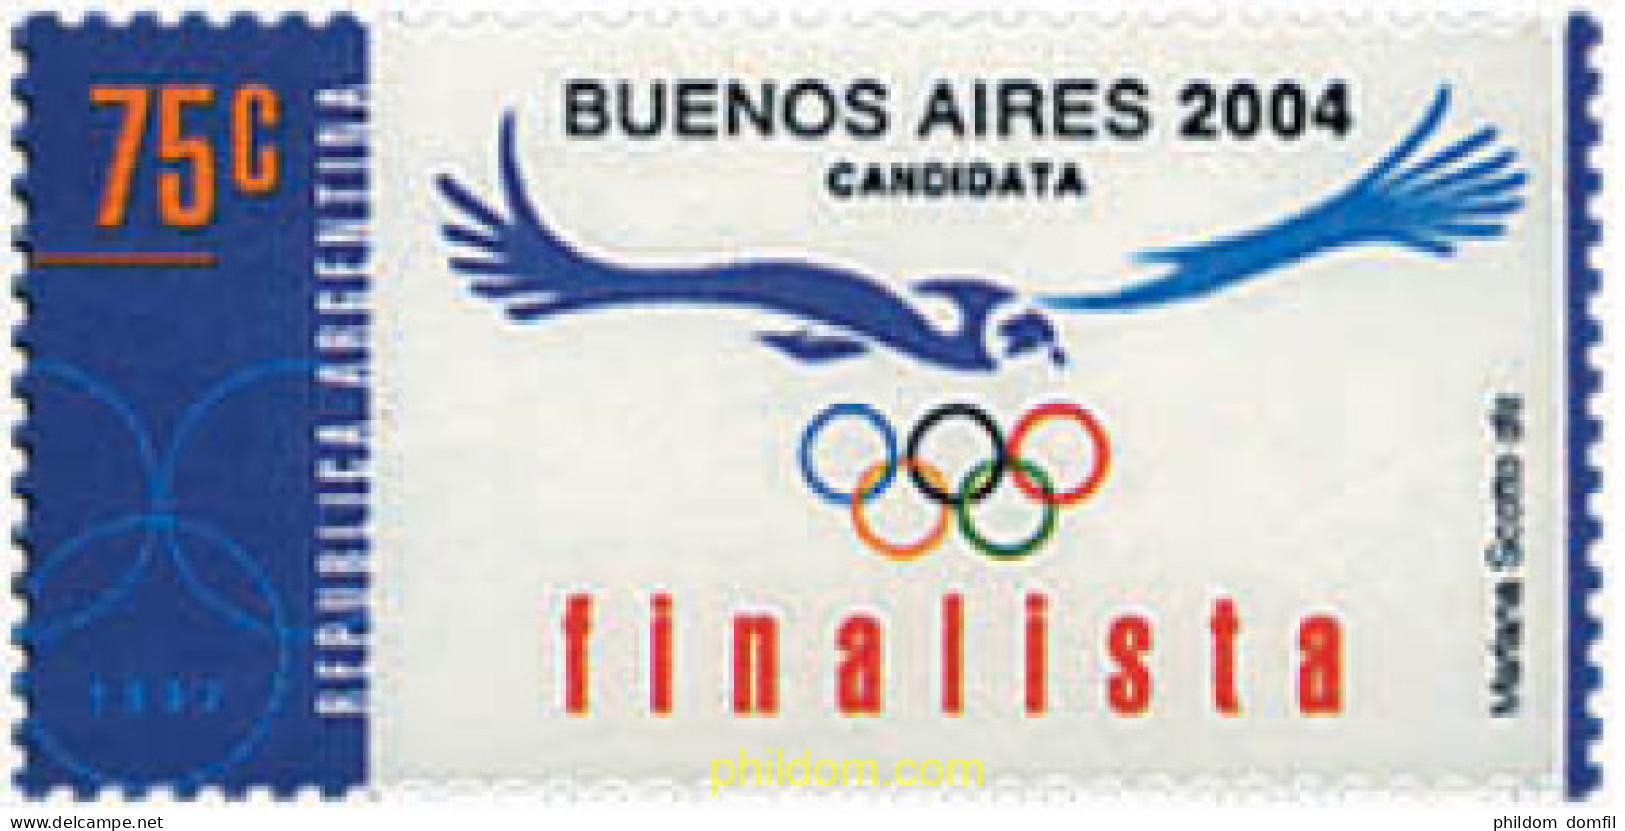 32169 MNH ARGENTINA 1997 CANDIDATURA DE BUENOS AIRES A LOS JUEGOS OLIMPICOS DE 2004 - Nuovi